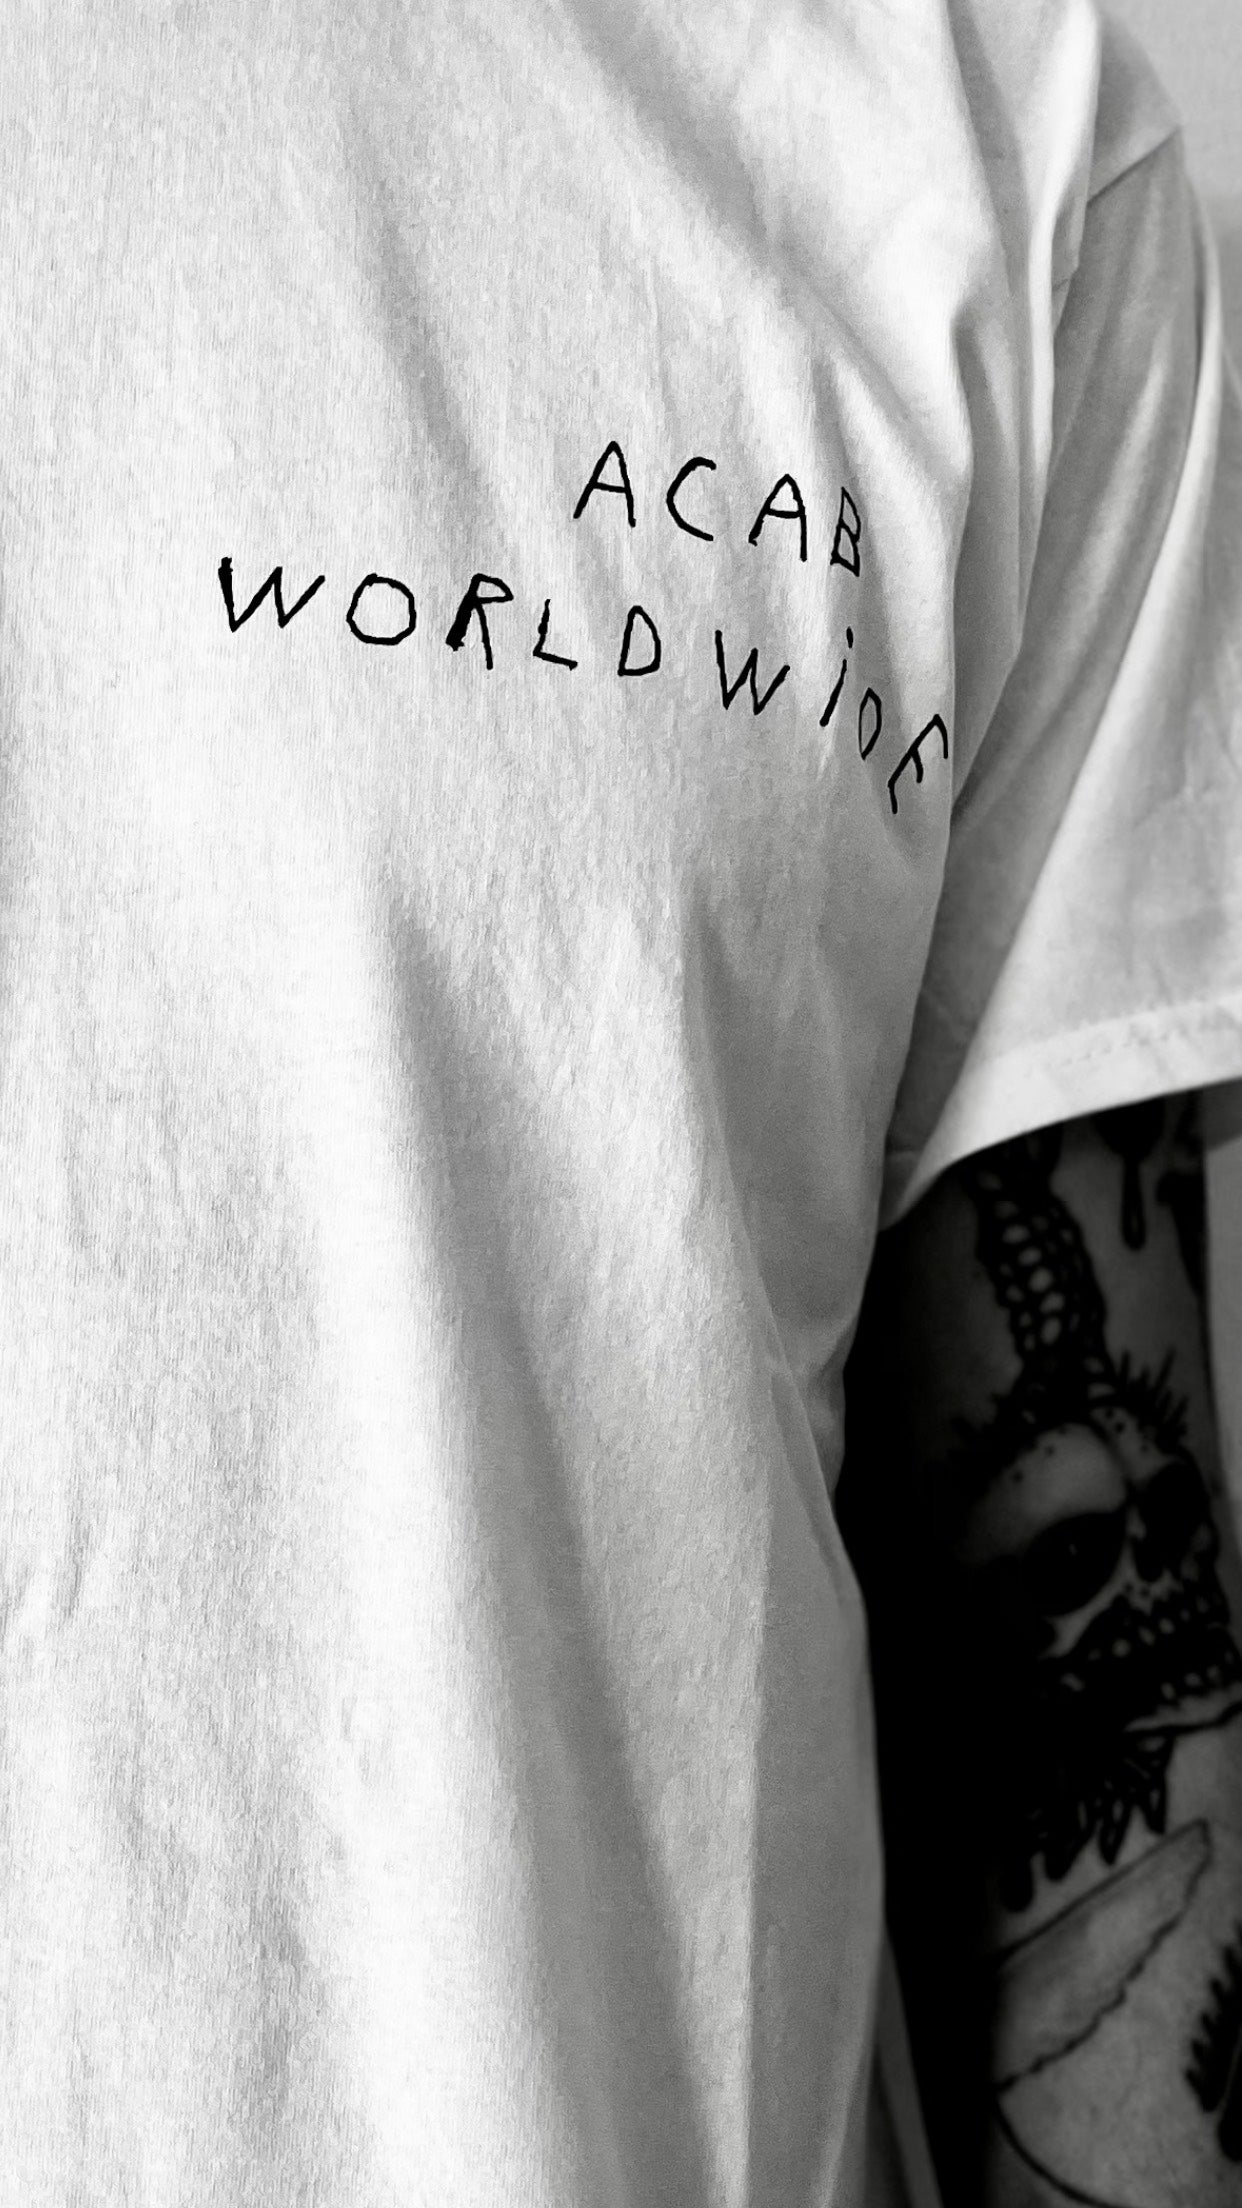 GLORY HOLE REC - ACAB WORLDWIDE - WHITE T-SHIRT